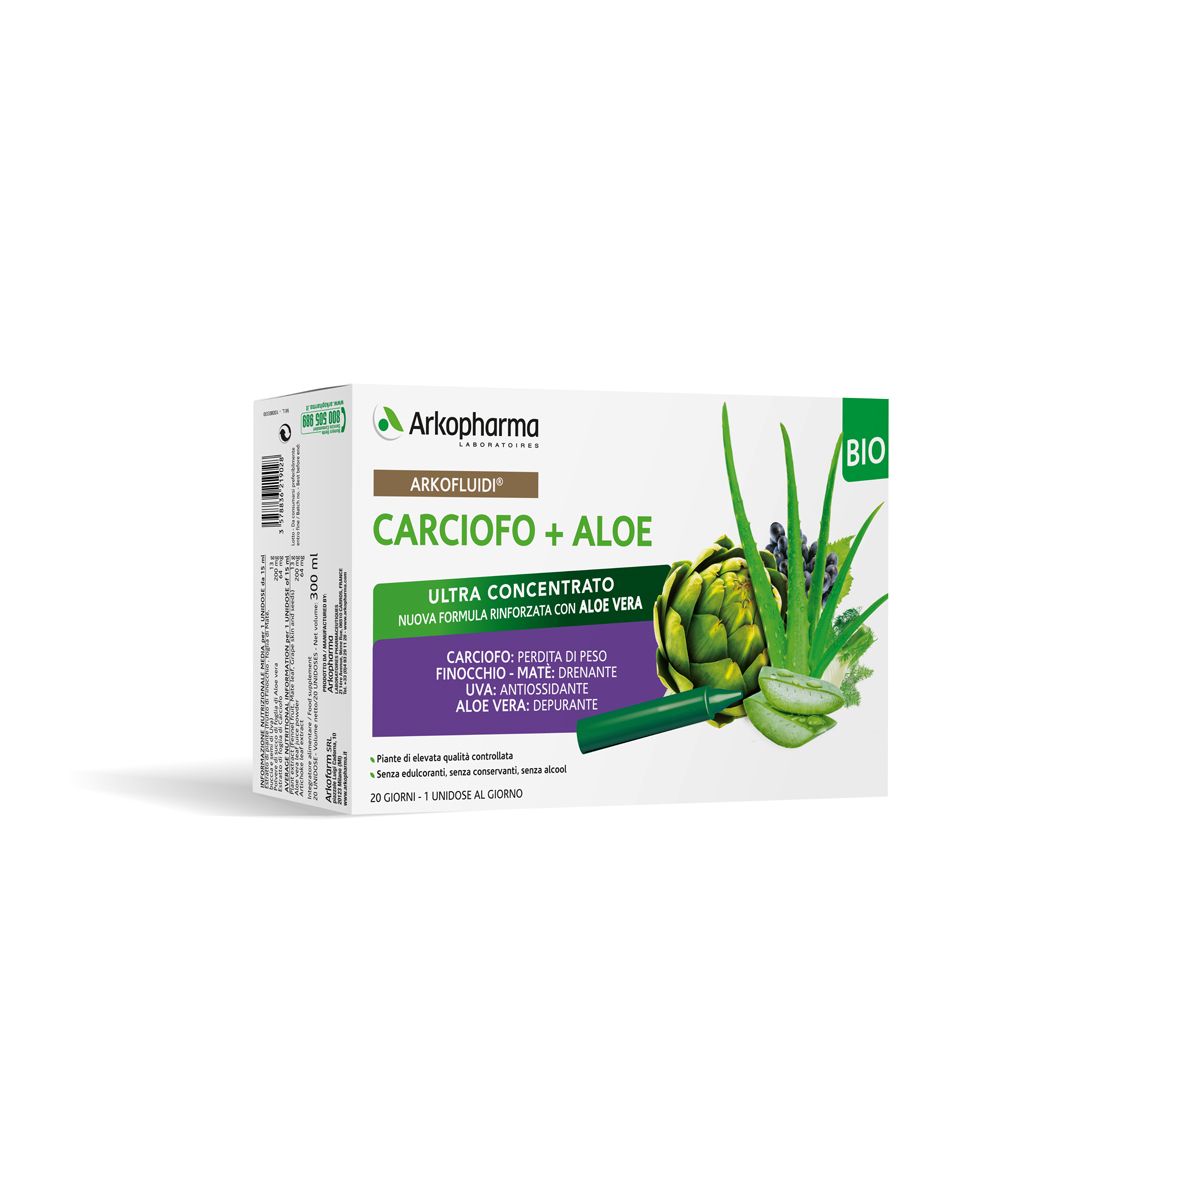 Arkofluidi Carciofo+Aloe Vera 20 Flaconcini